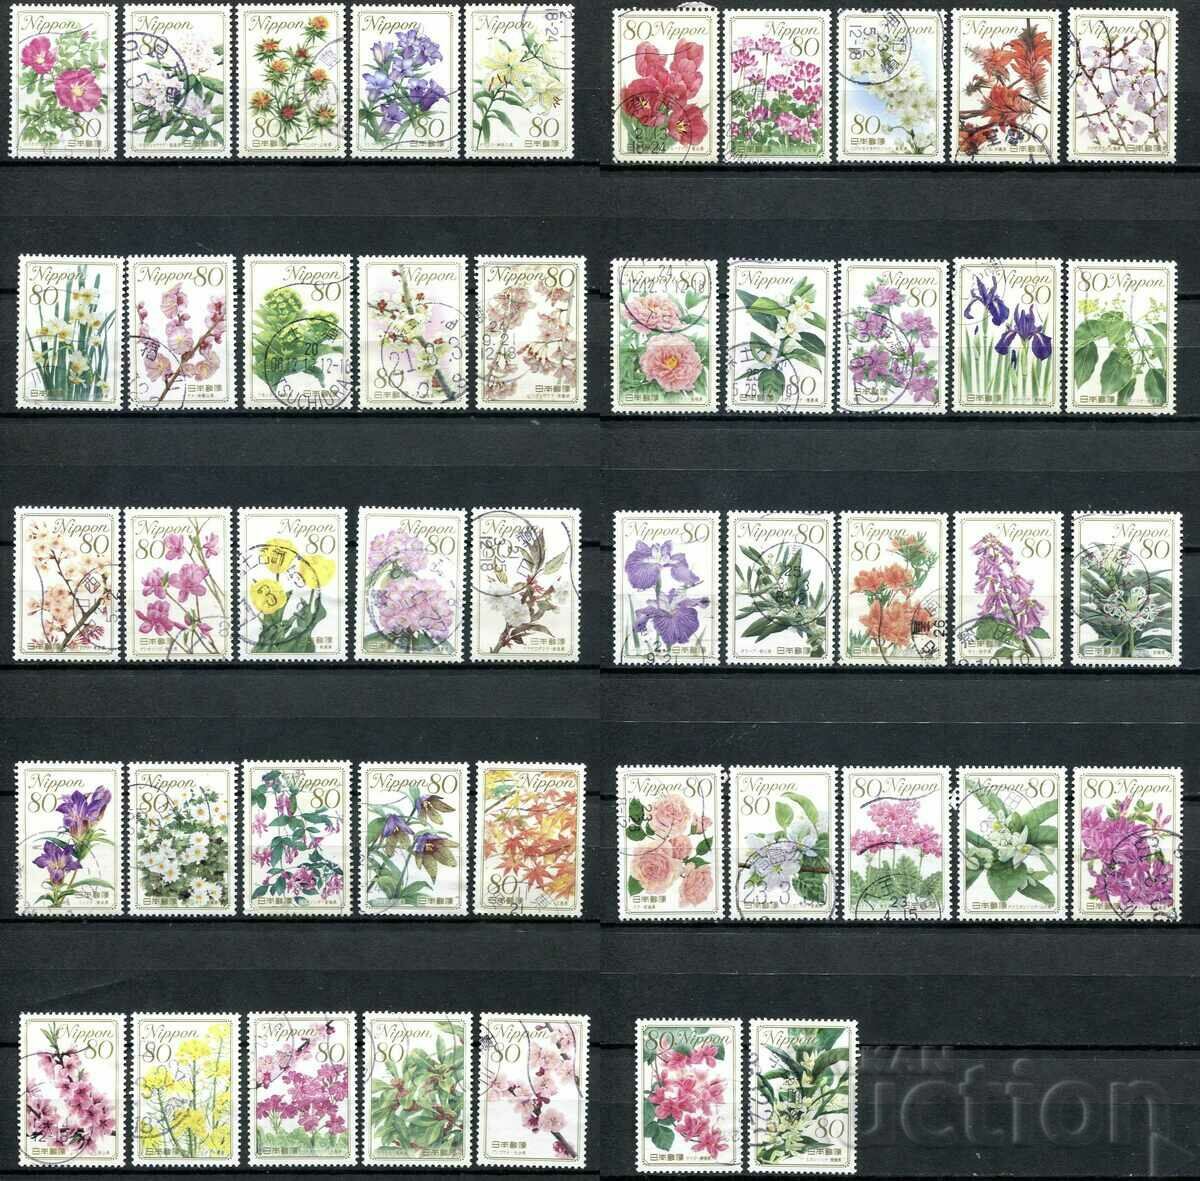 Japonia 2008-11 FOLOSIT - Flori, flora [serie completa]